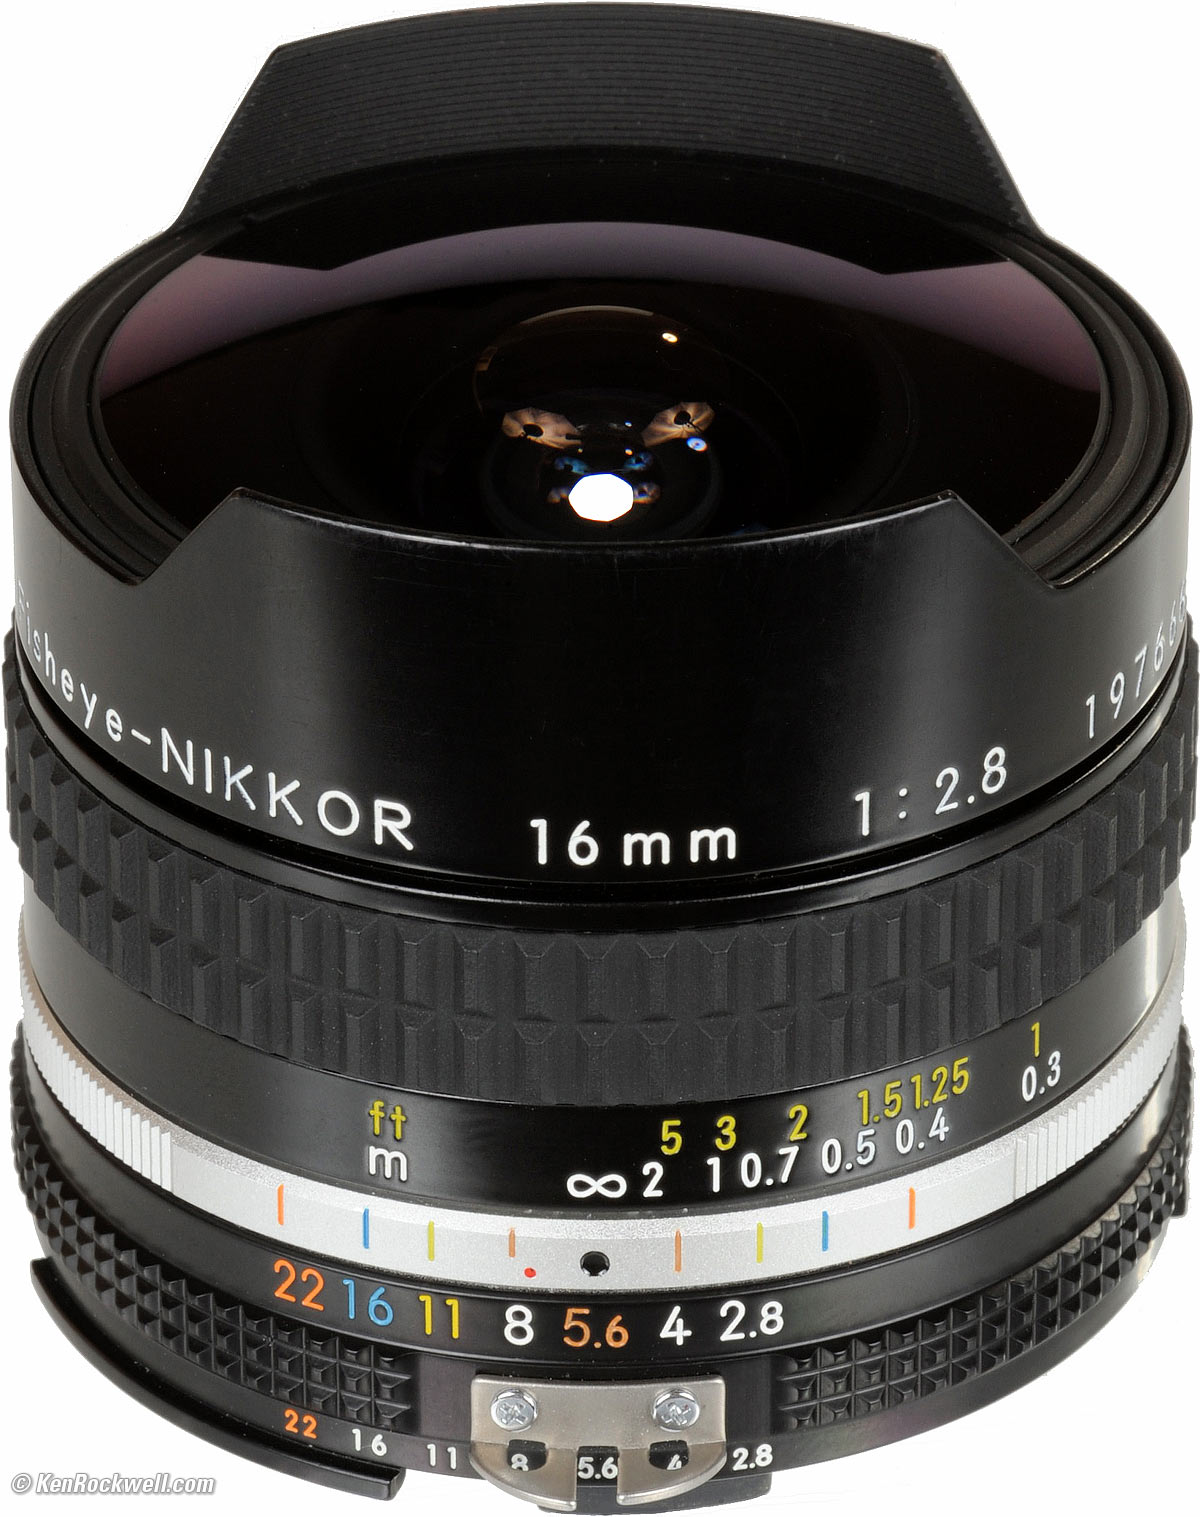 Nikon 16mm f/2.8 Fisheye Review